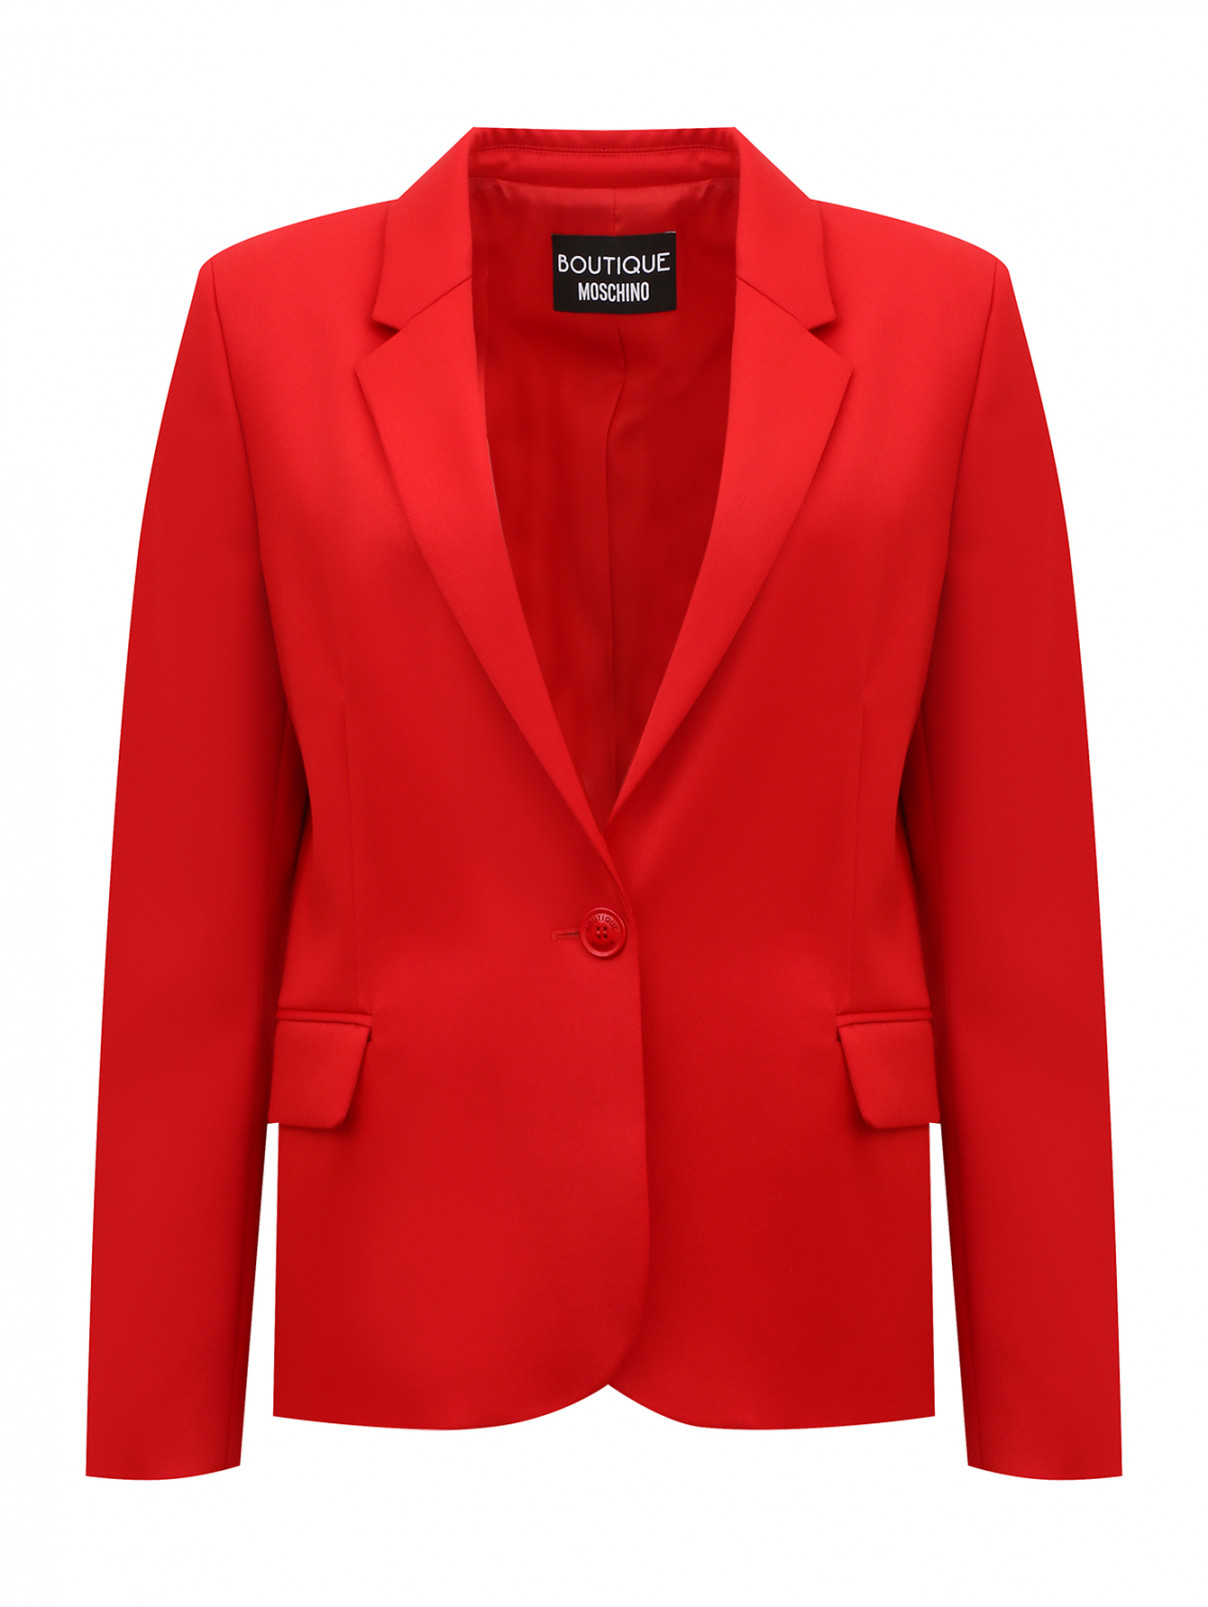 Жакет из шерсти Moschino Boutique  –  Общий вид  – Цвет:  Красный